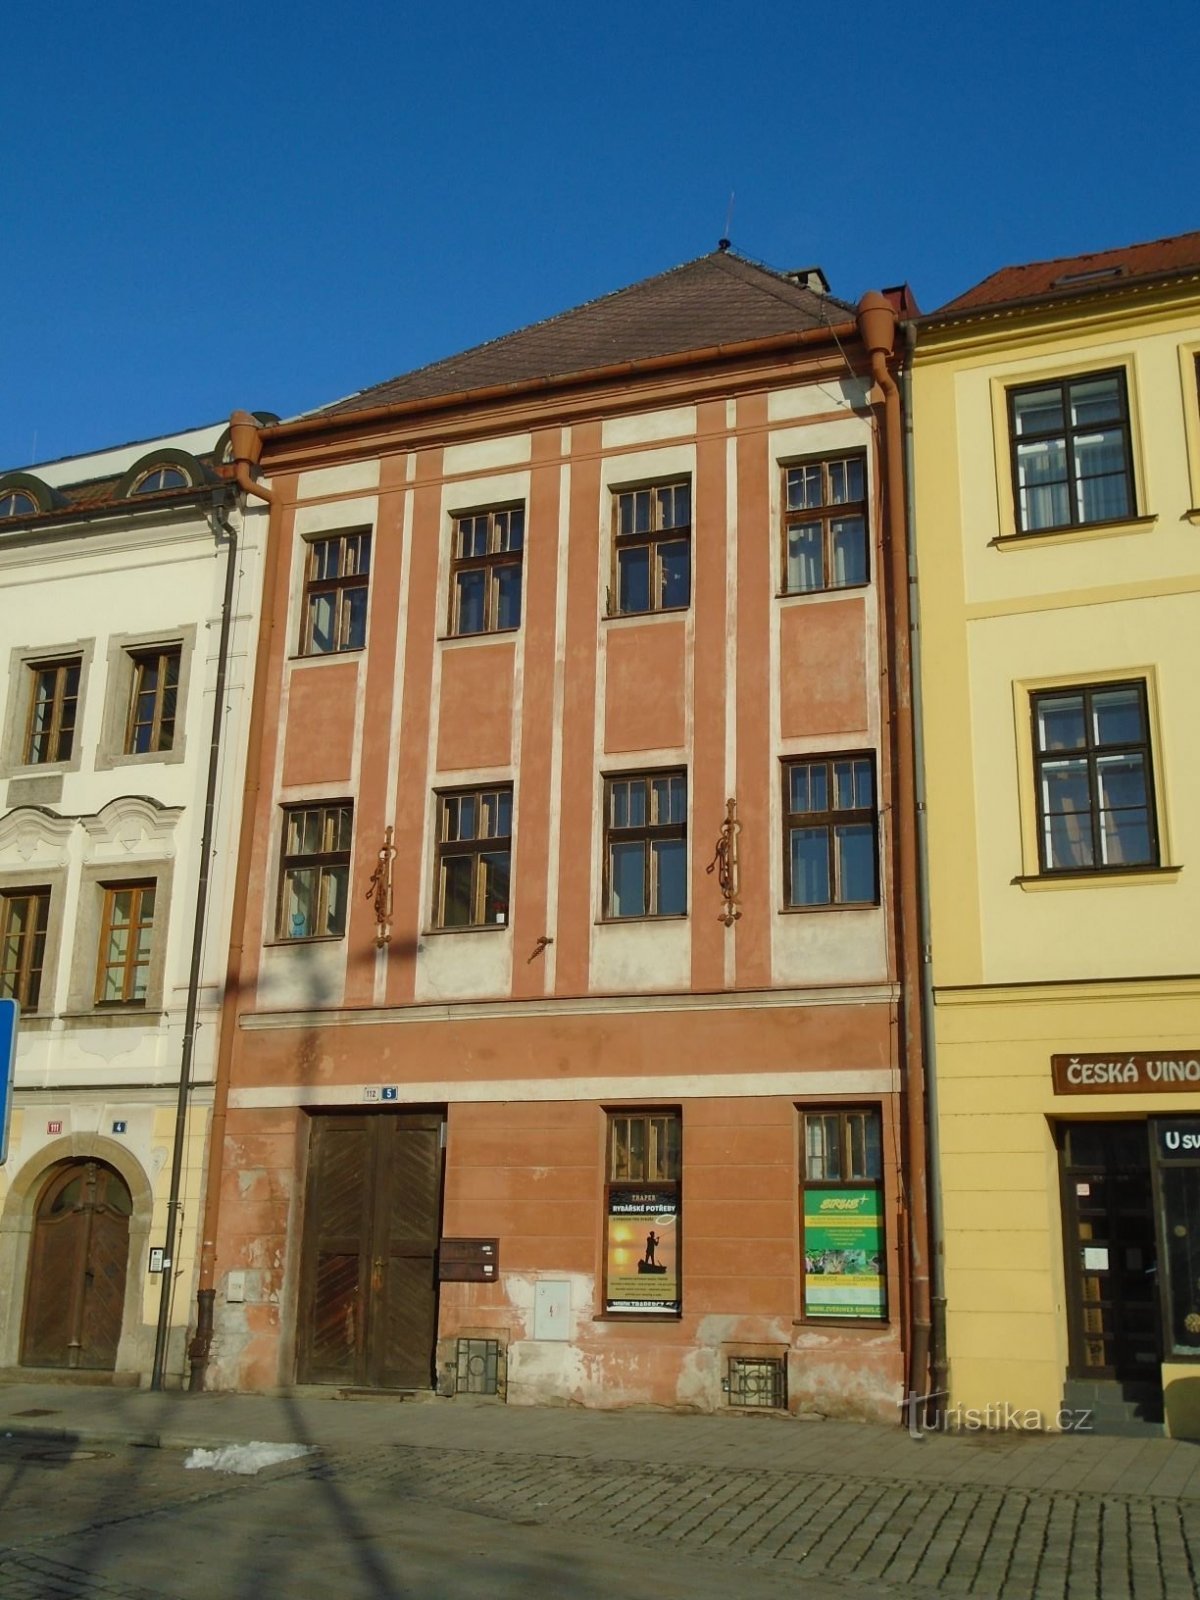 Malé náměstí no. 112 (Hradec Králové, 30.1.2019. huhtikuuta XNUMX)